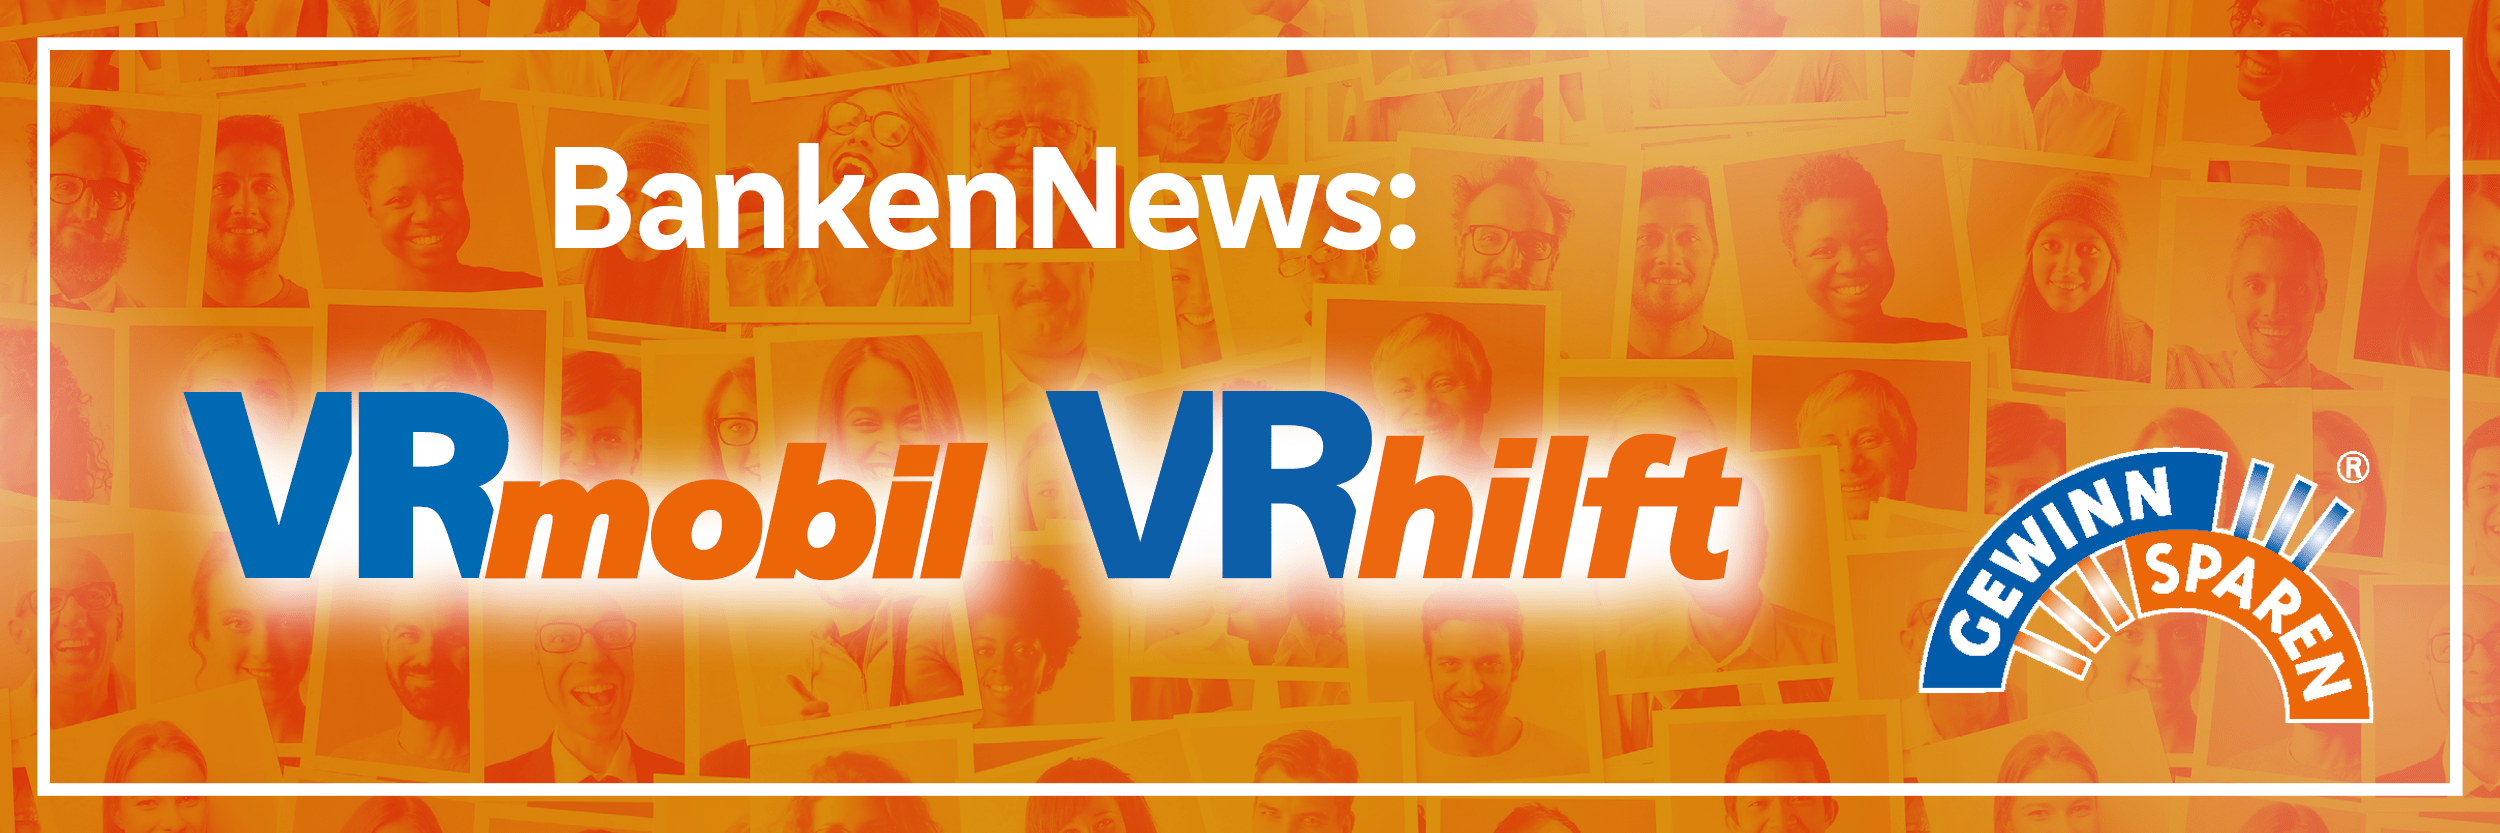 Neues zu VRmobil und VRhilft